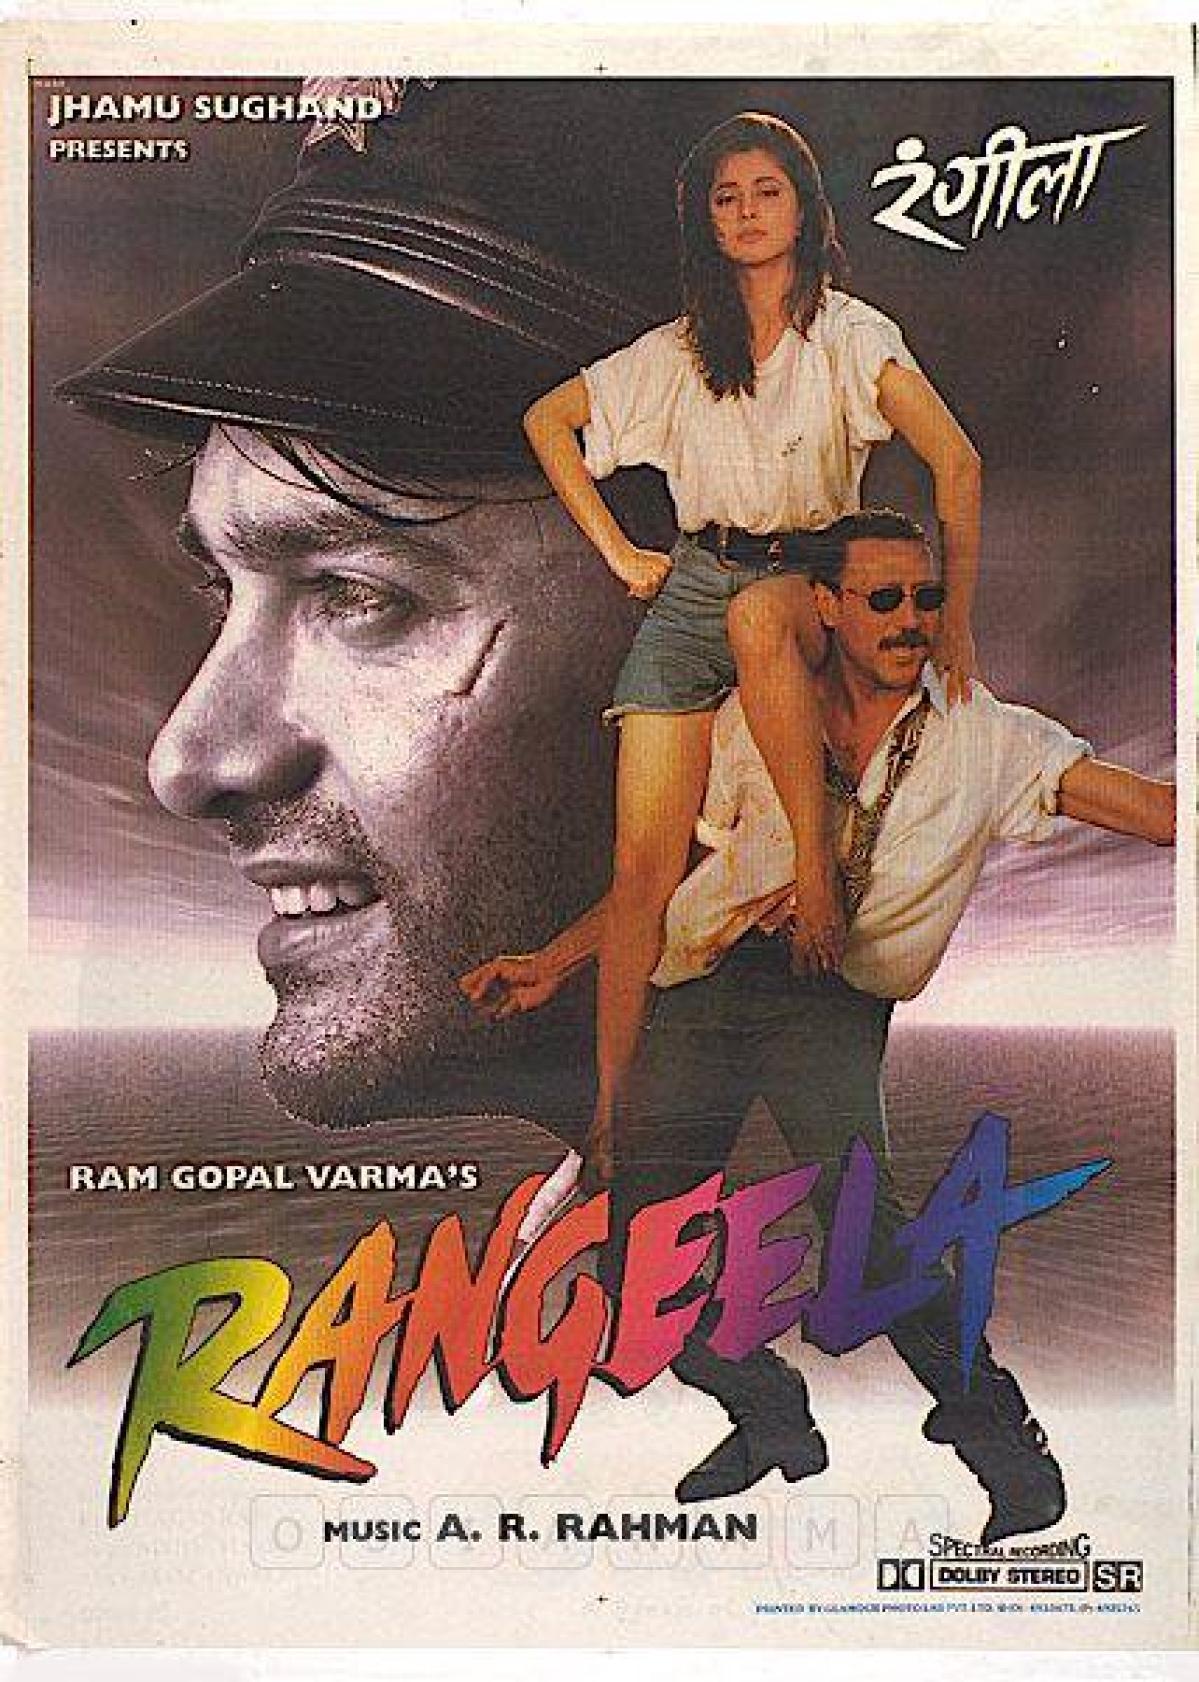 Aamir khan on Rangeela: आमिर खान ने रंगीला फिल्म में टपोरी लुक के लिए किया था ये काम, किया खुलासा